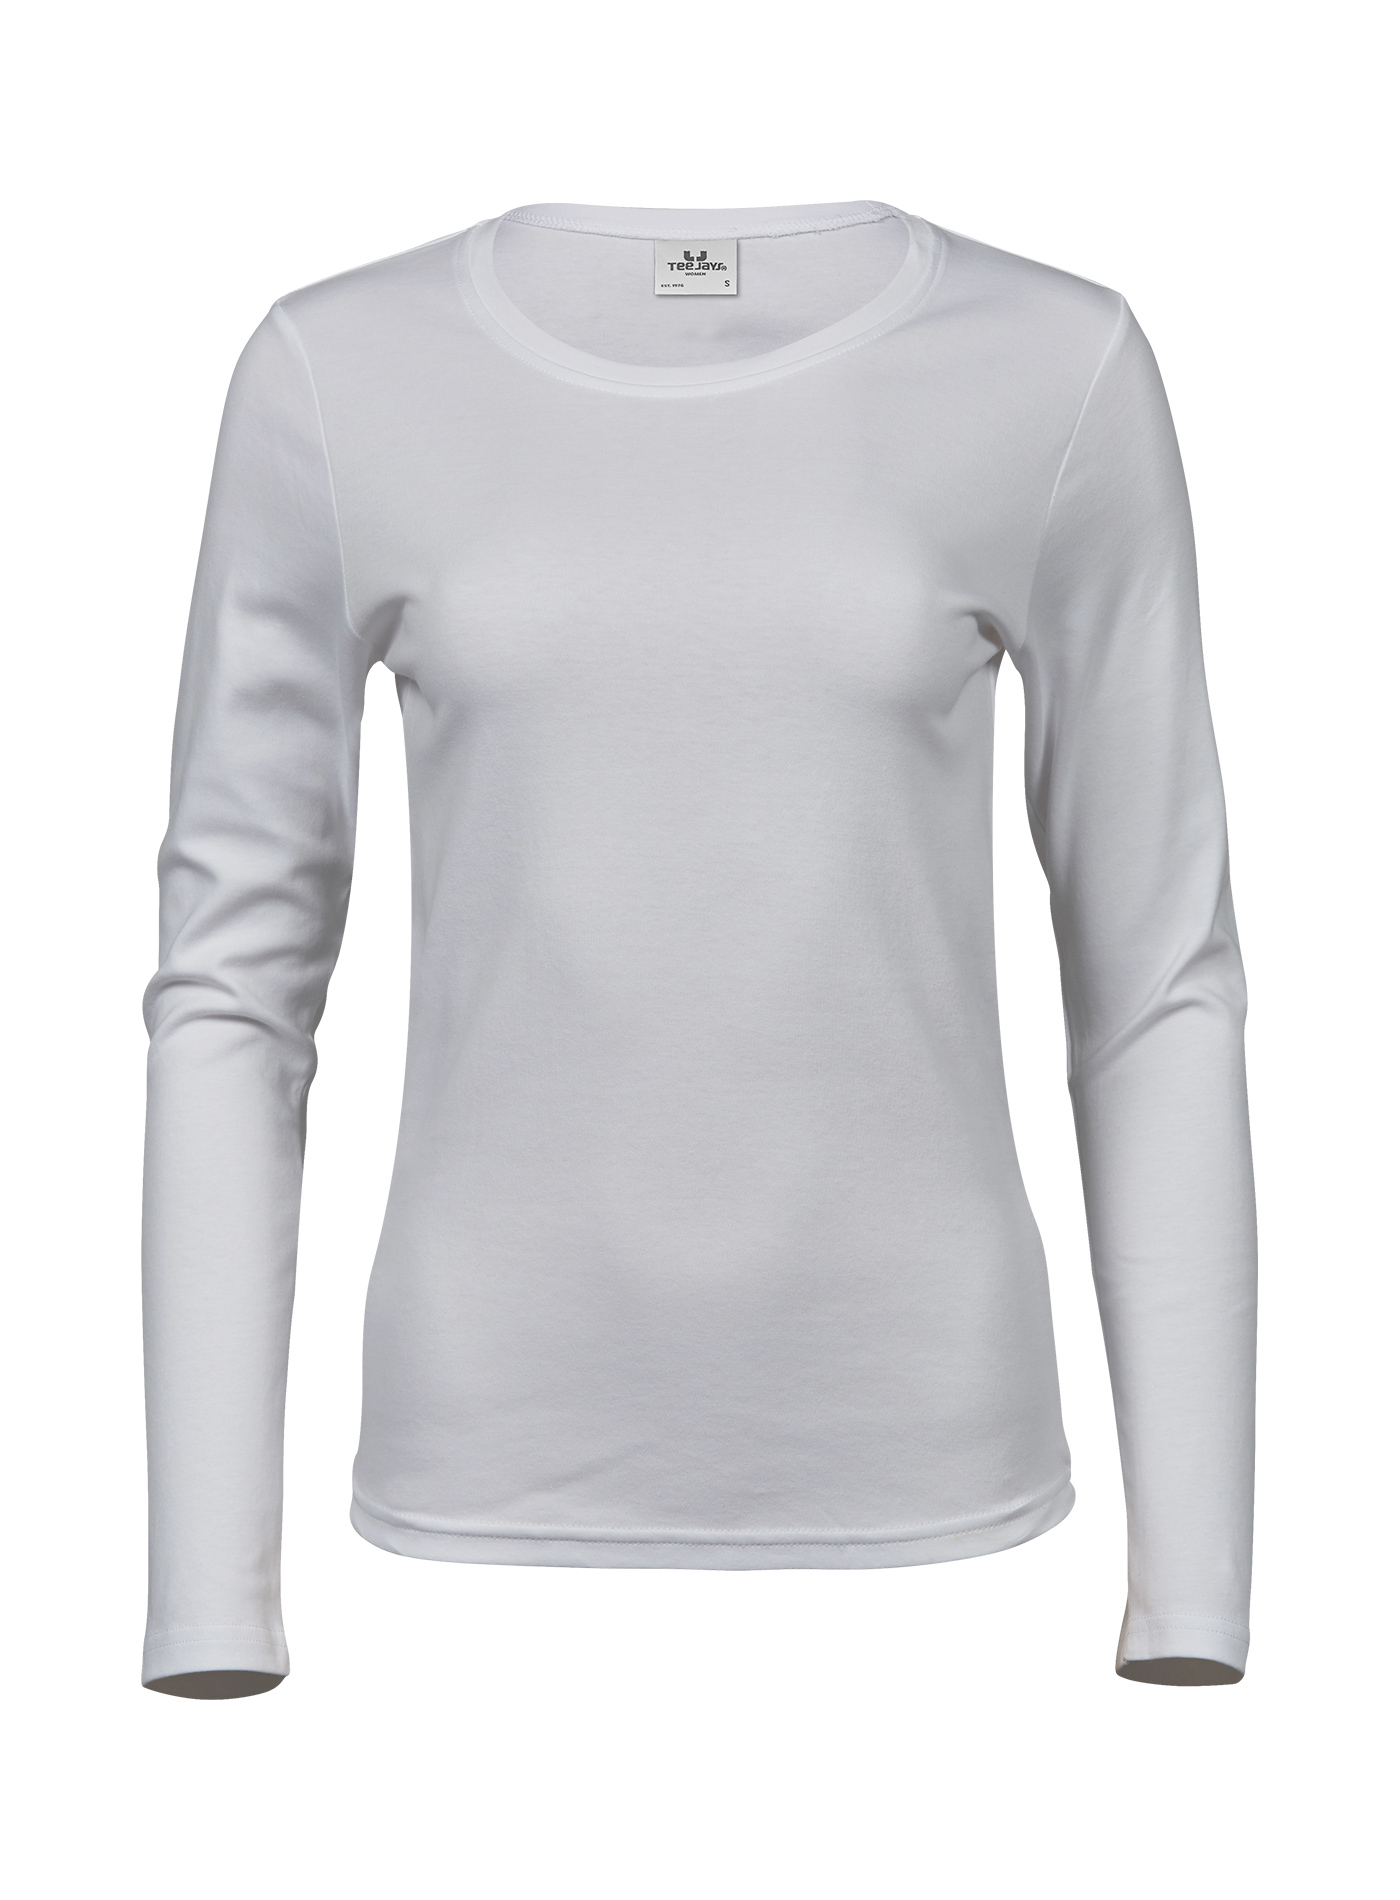 Dámské tričko s dlouhými rukávy Tee Jays Interlock - Bílá M